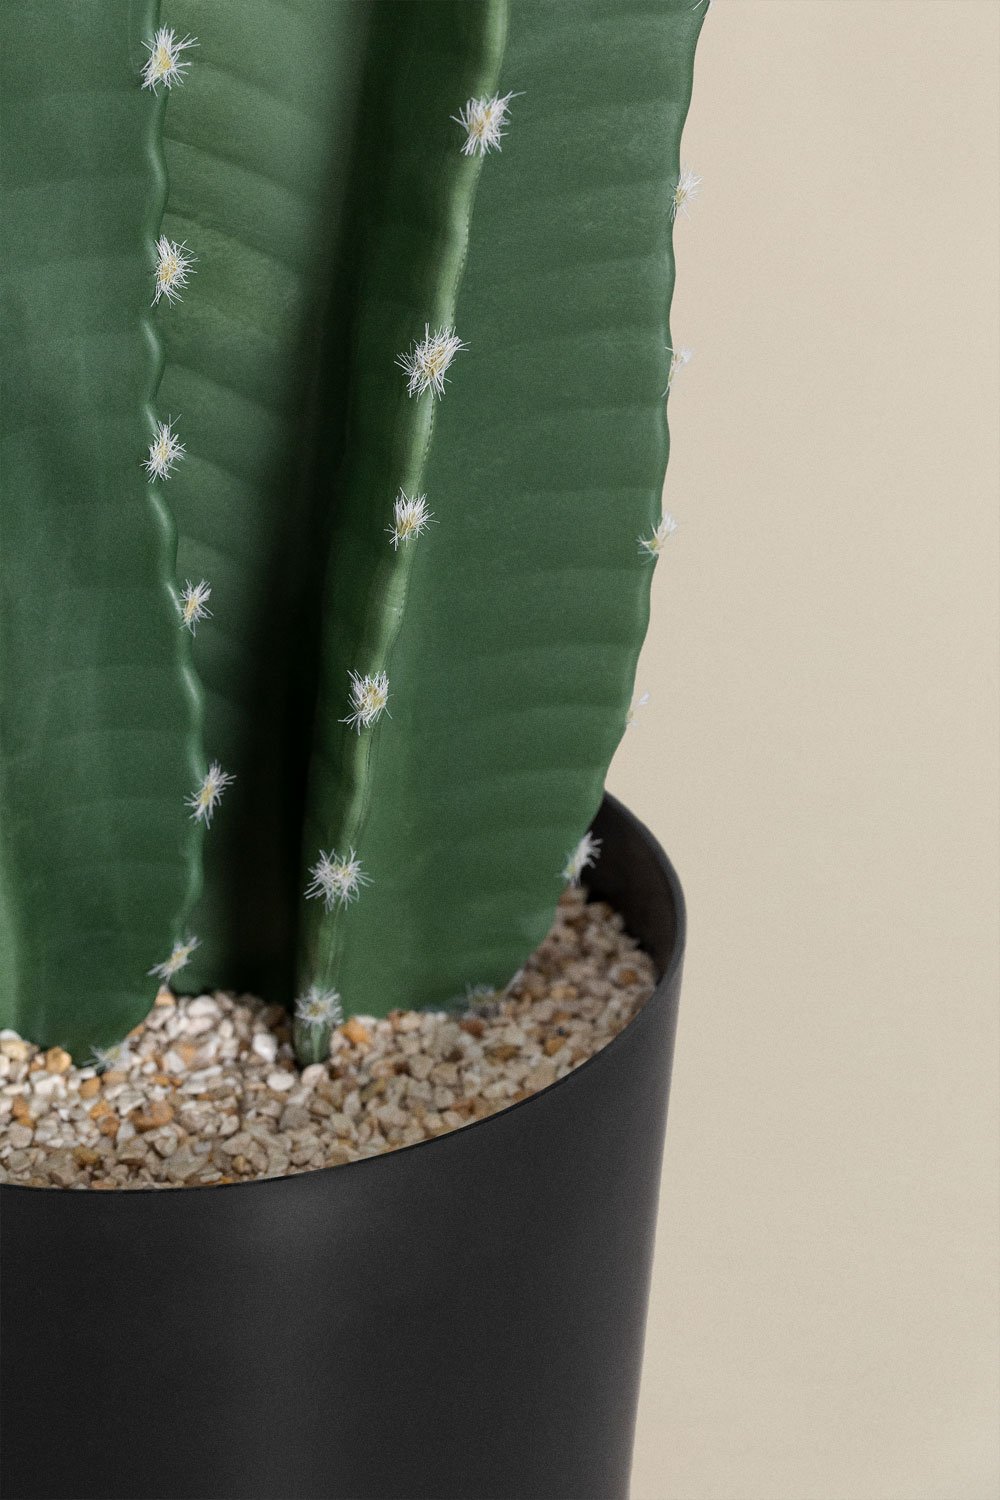 Kaktus Cereus Künstlich - Künstliche Pflanzen